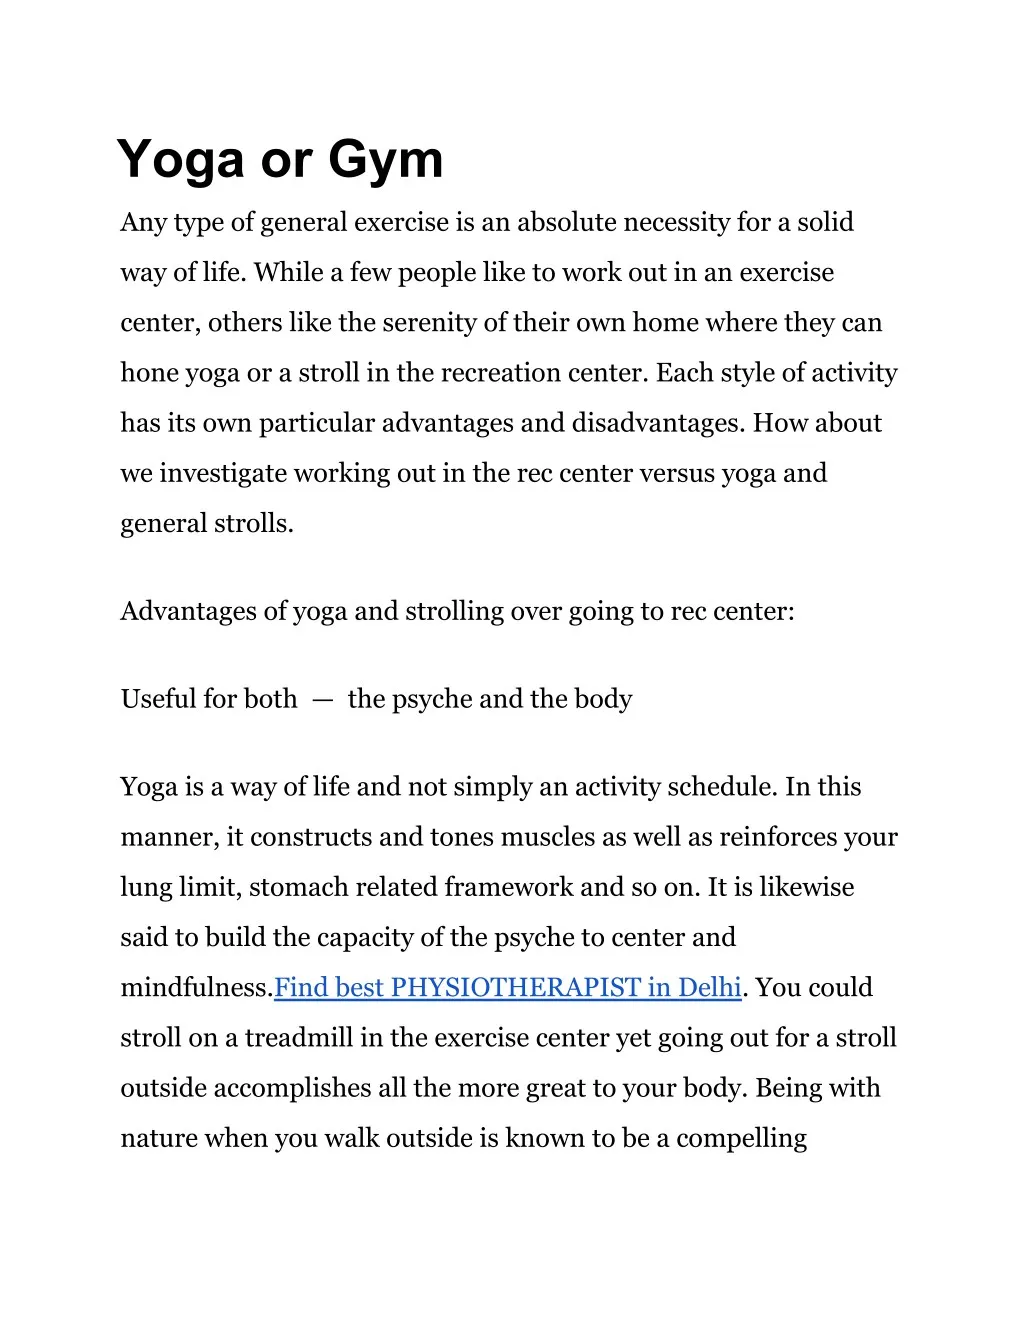 yoga or gym